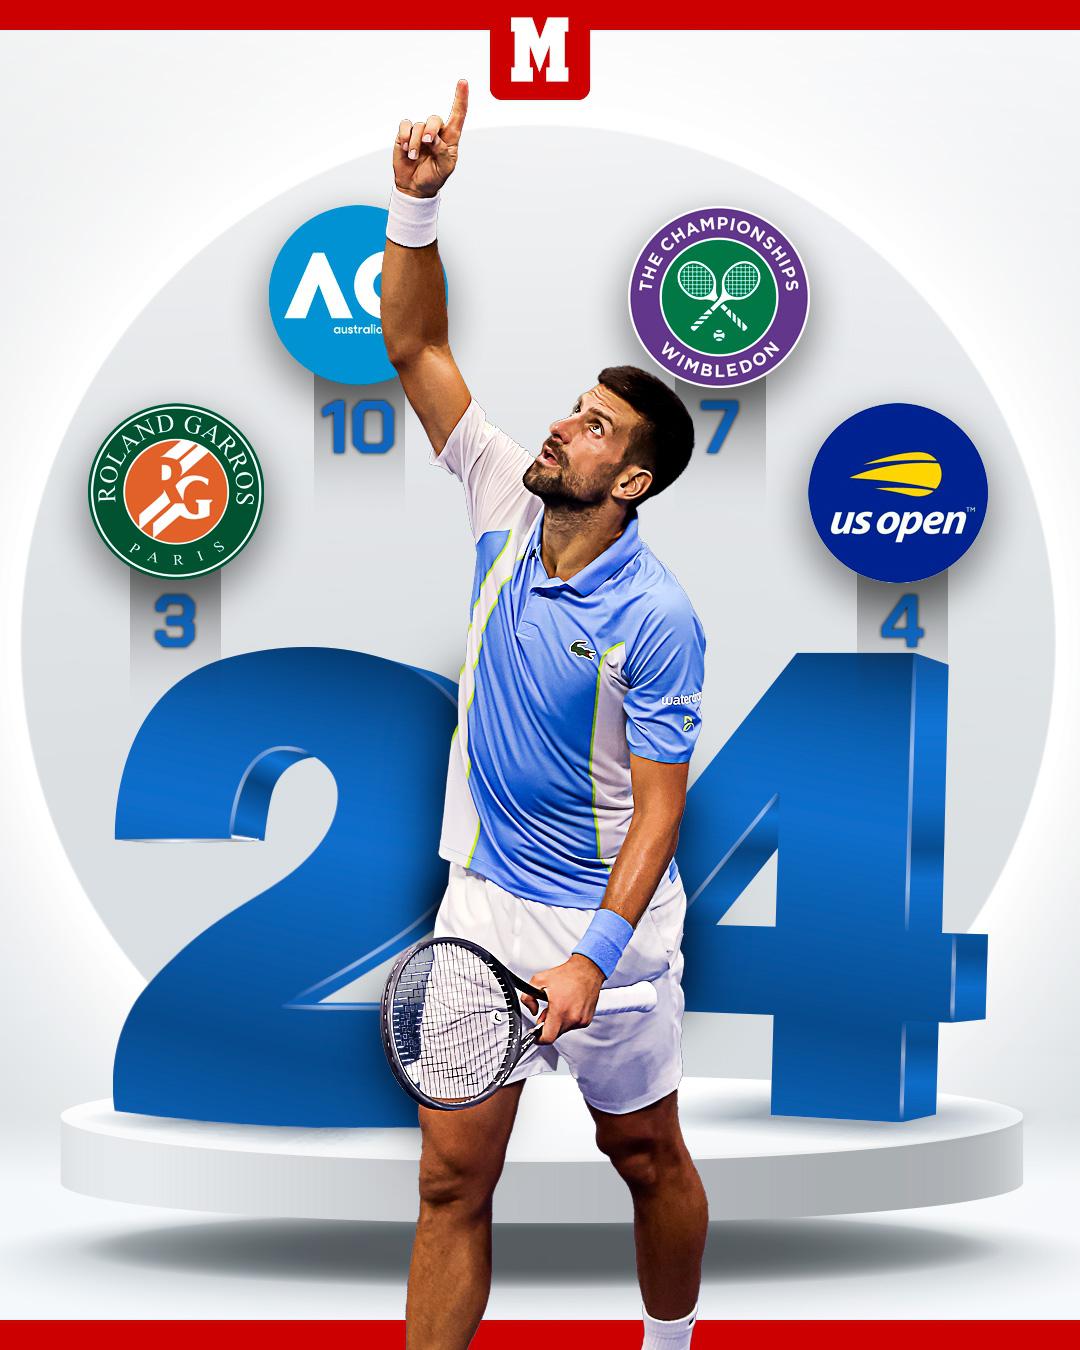 德约大满贯24冠分布：澳网10冠、法网3冠、温网7冠、美网4冠